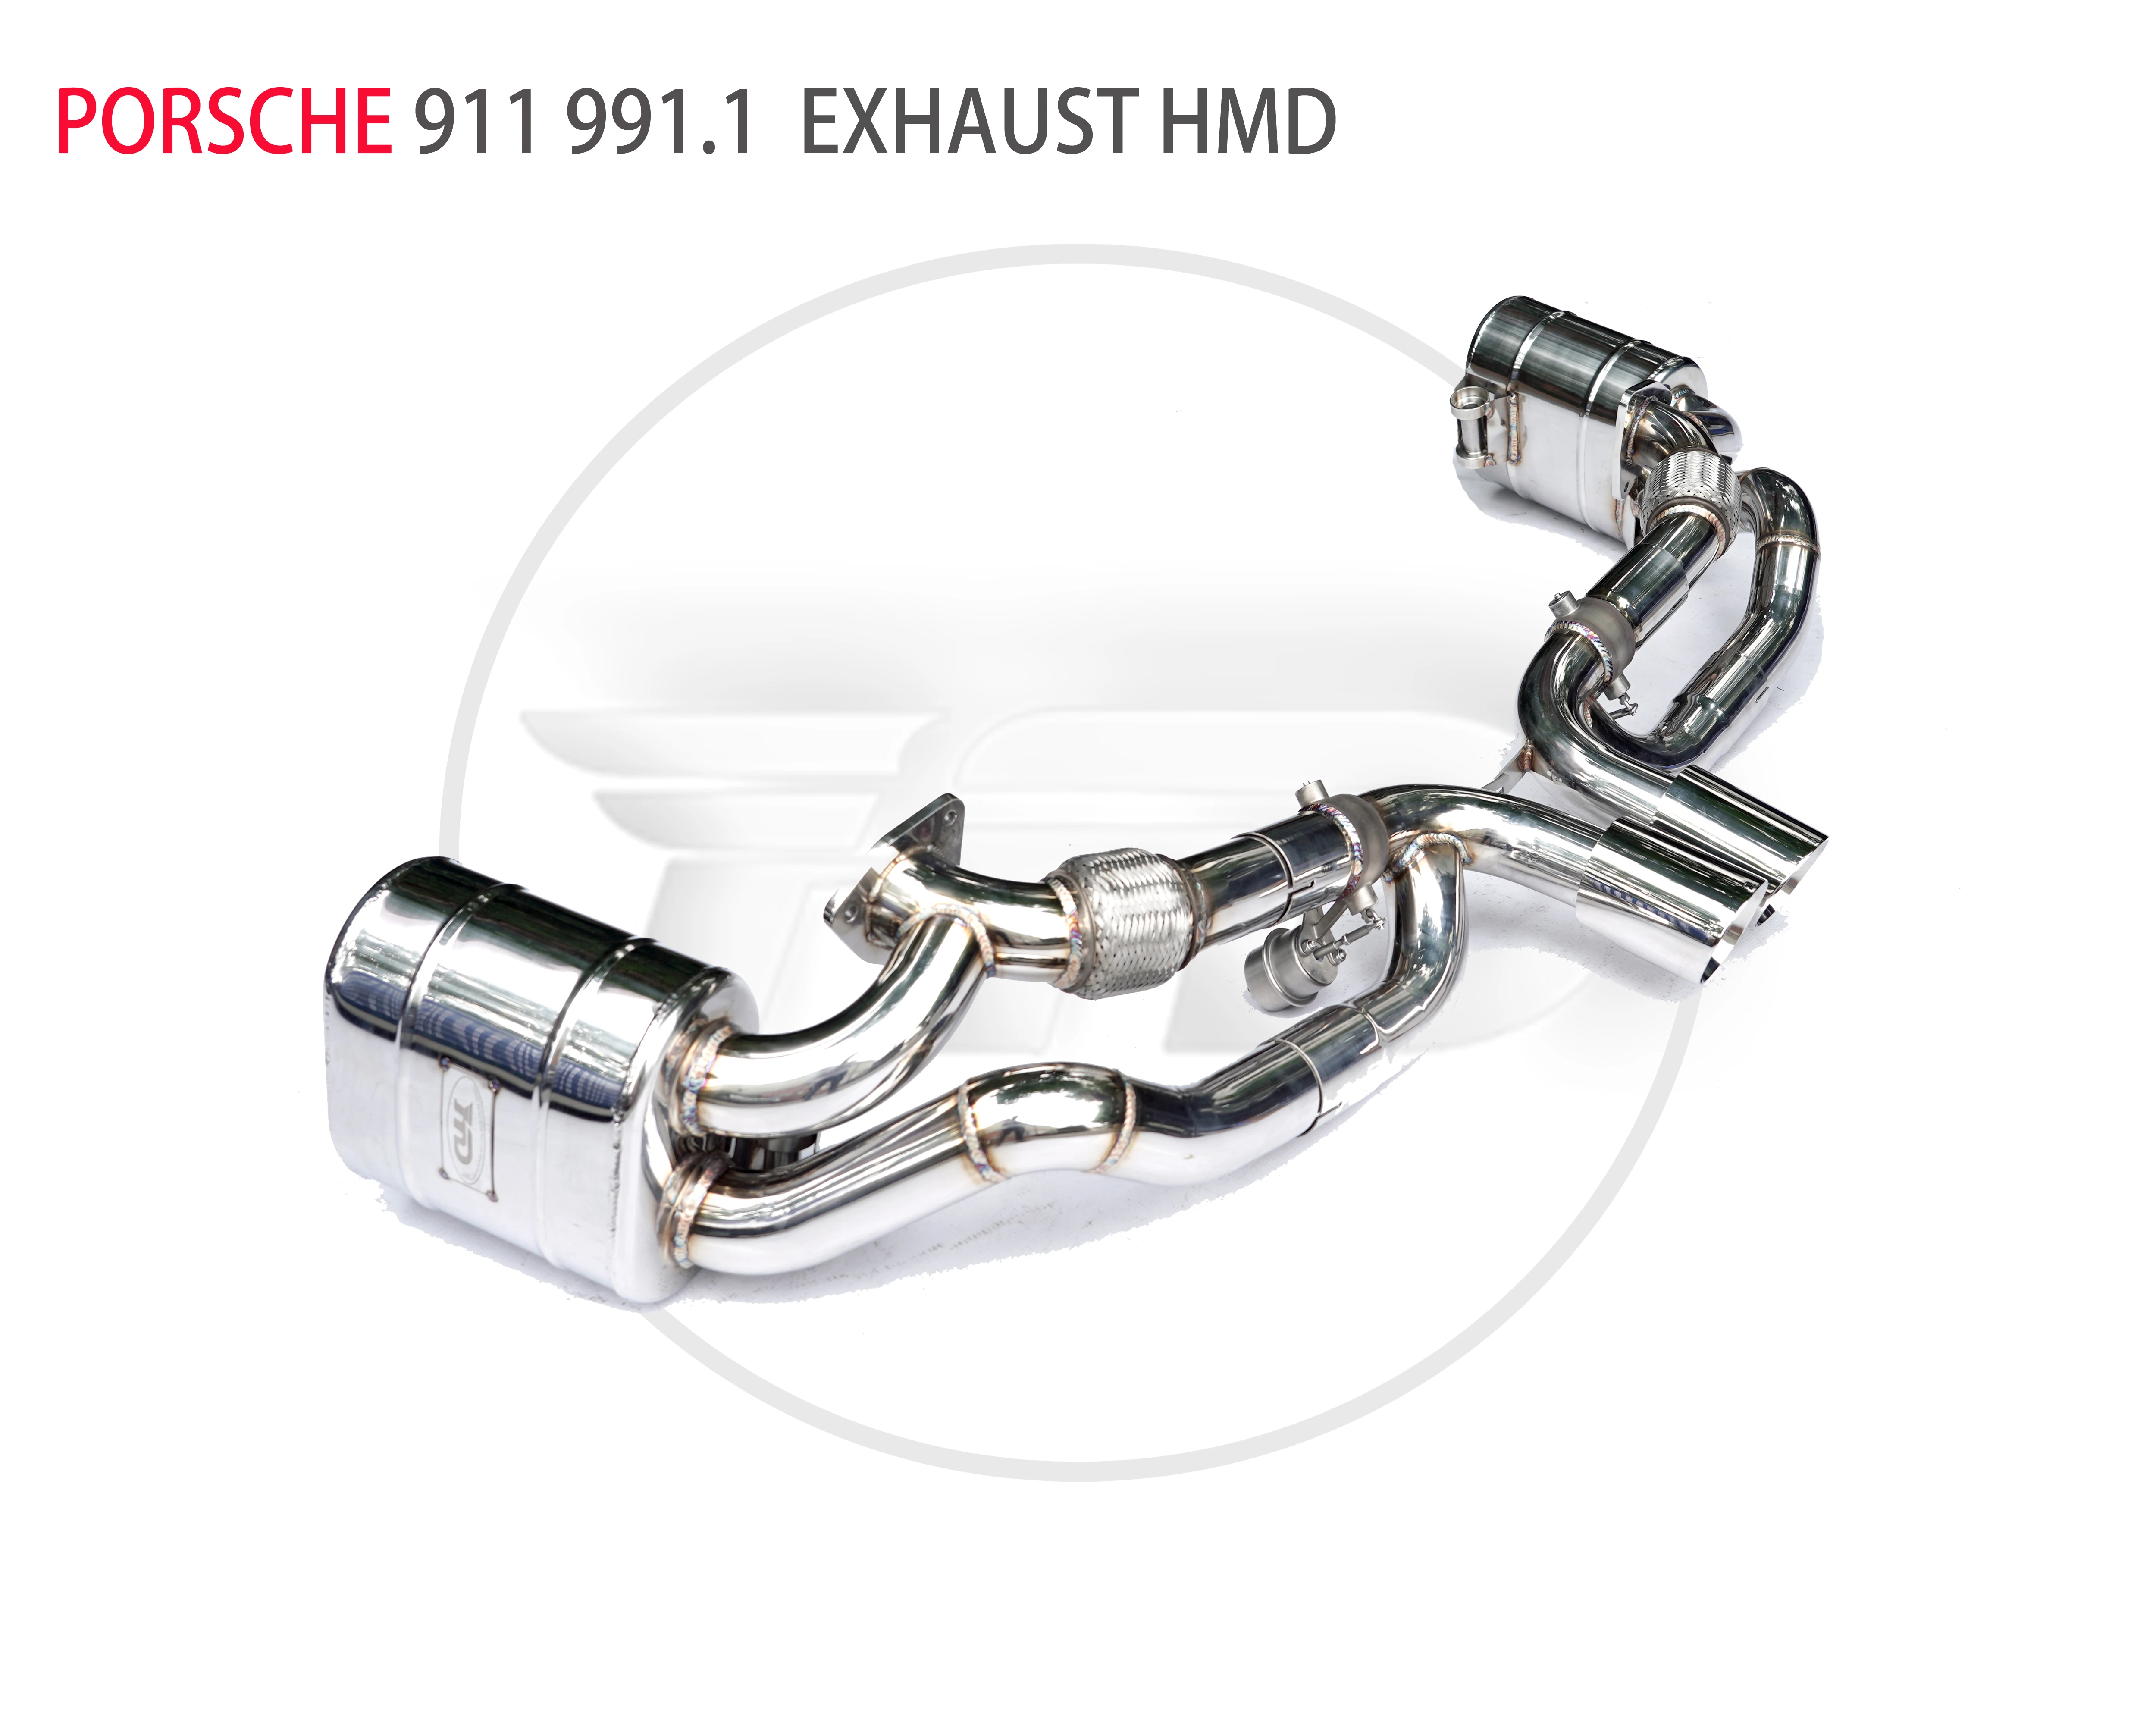 

HMD Exhaust System Catback Is Suitable For PORSCHE 911 991 992 997 996 Auto Modification Parts Valve Car Accessories